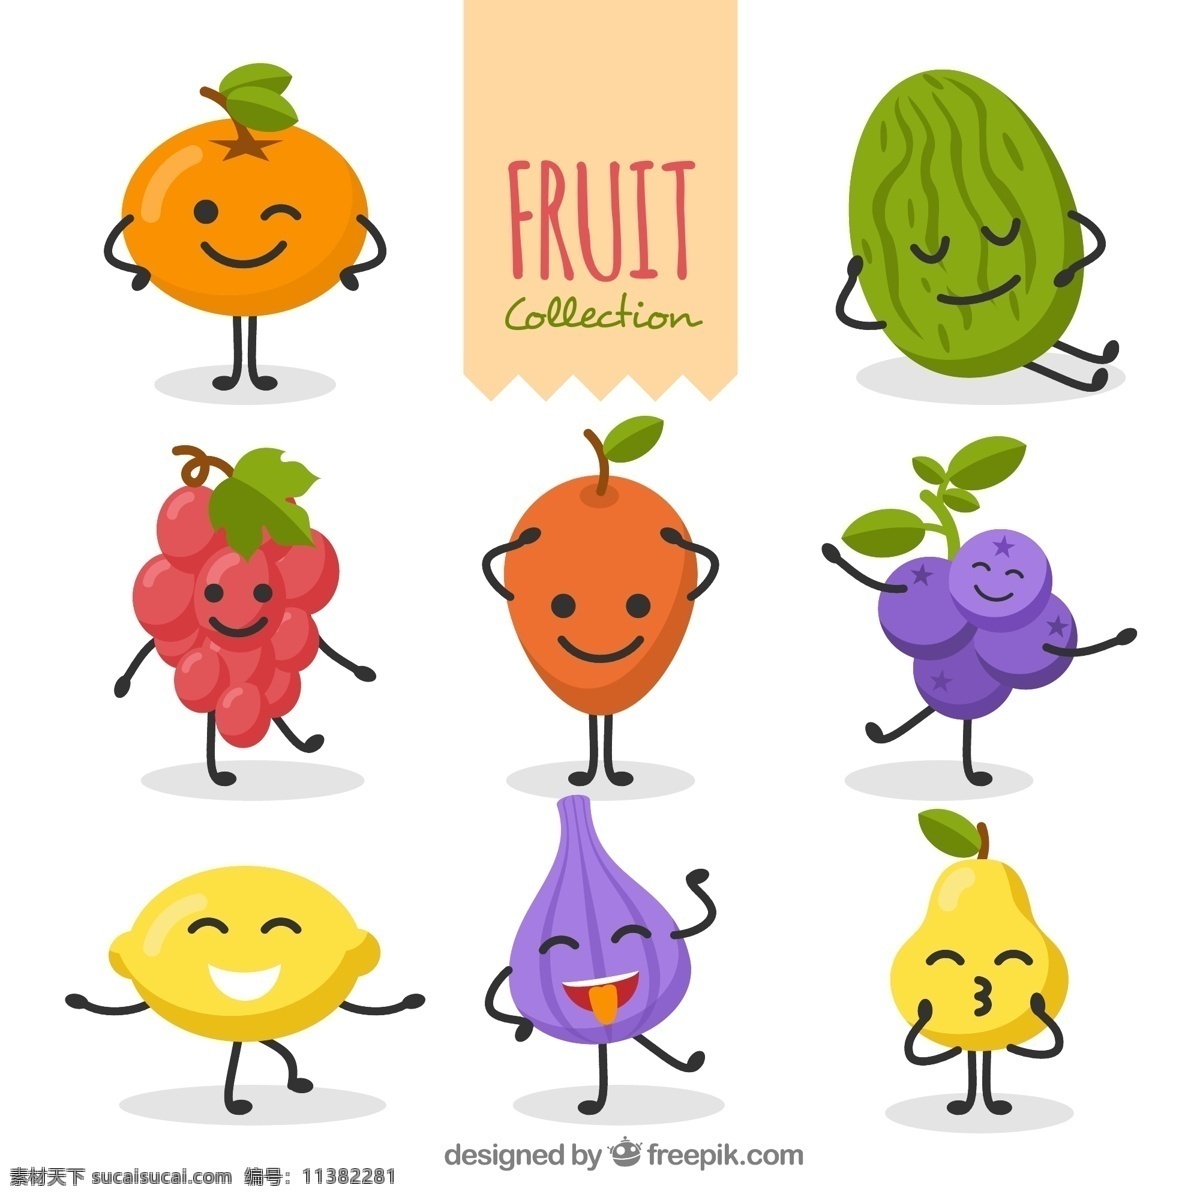 款 笑脸 表情 水果 矢量 卡通 葡萄 雪梨 柠檬 矢量素材 水彩 树莓